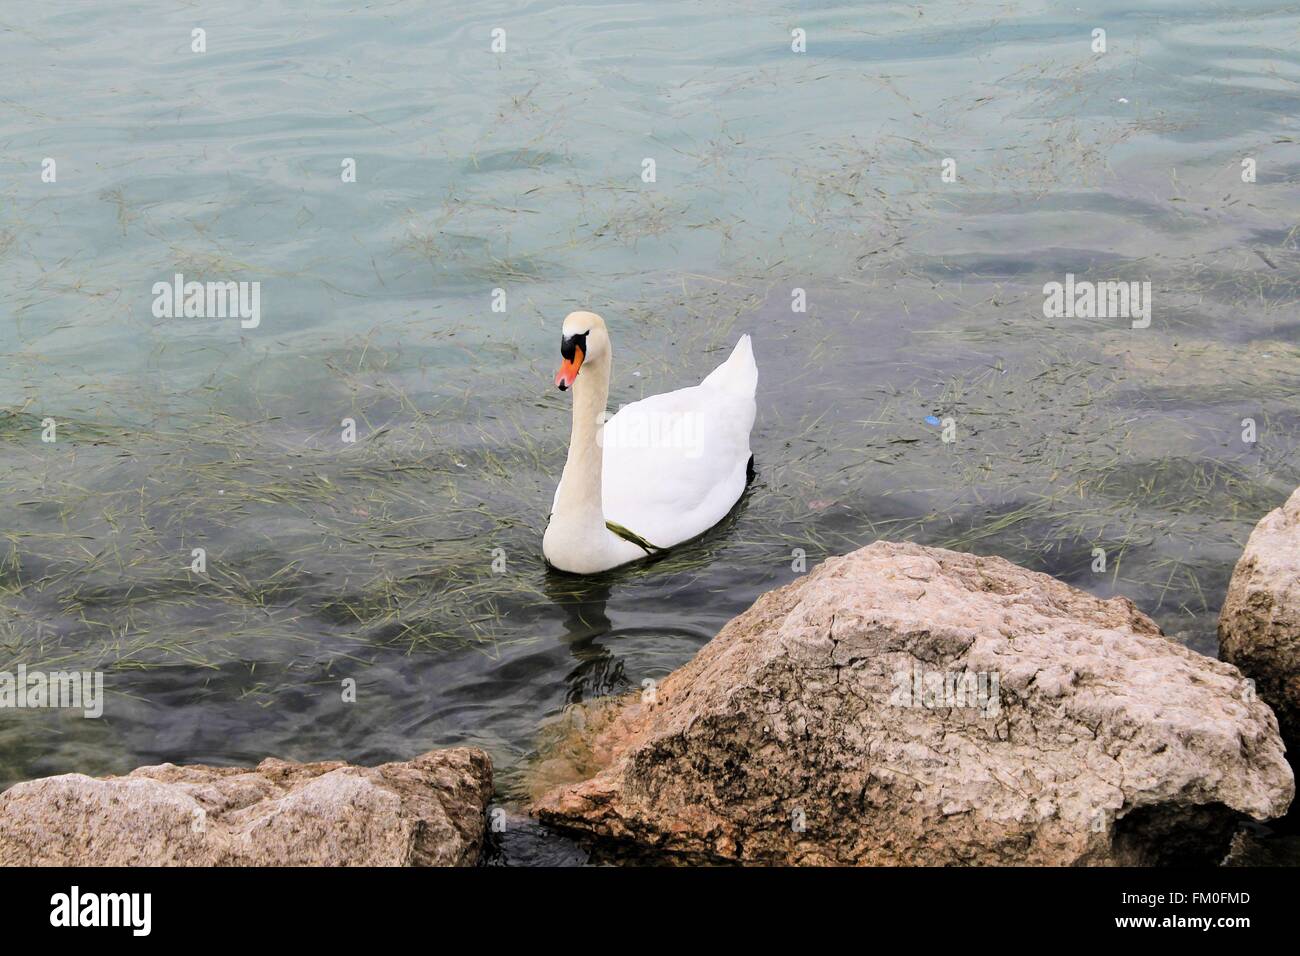 swan Stock Photo